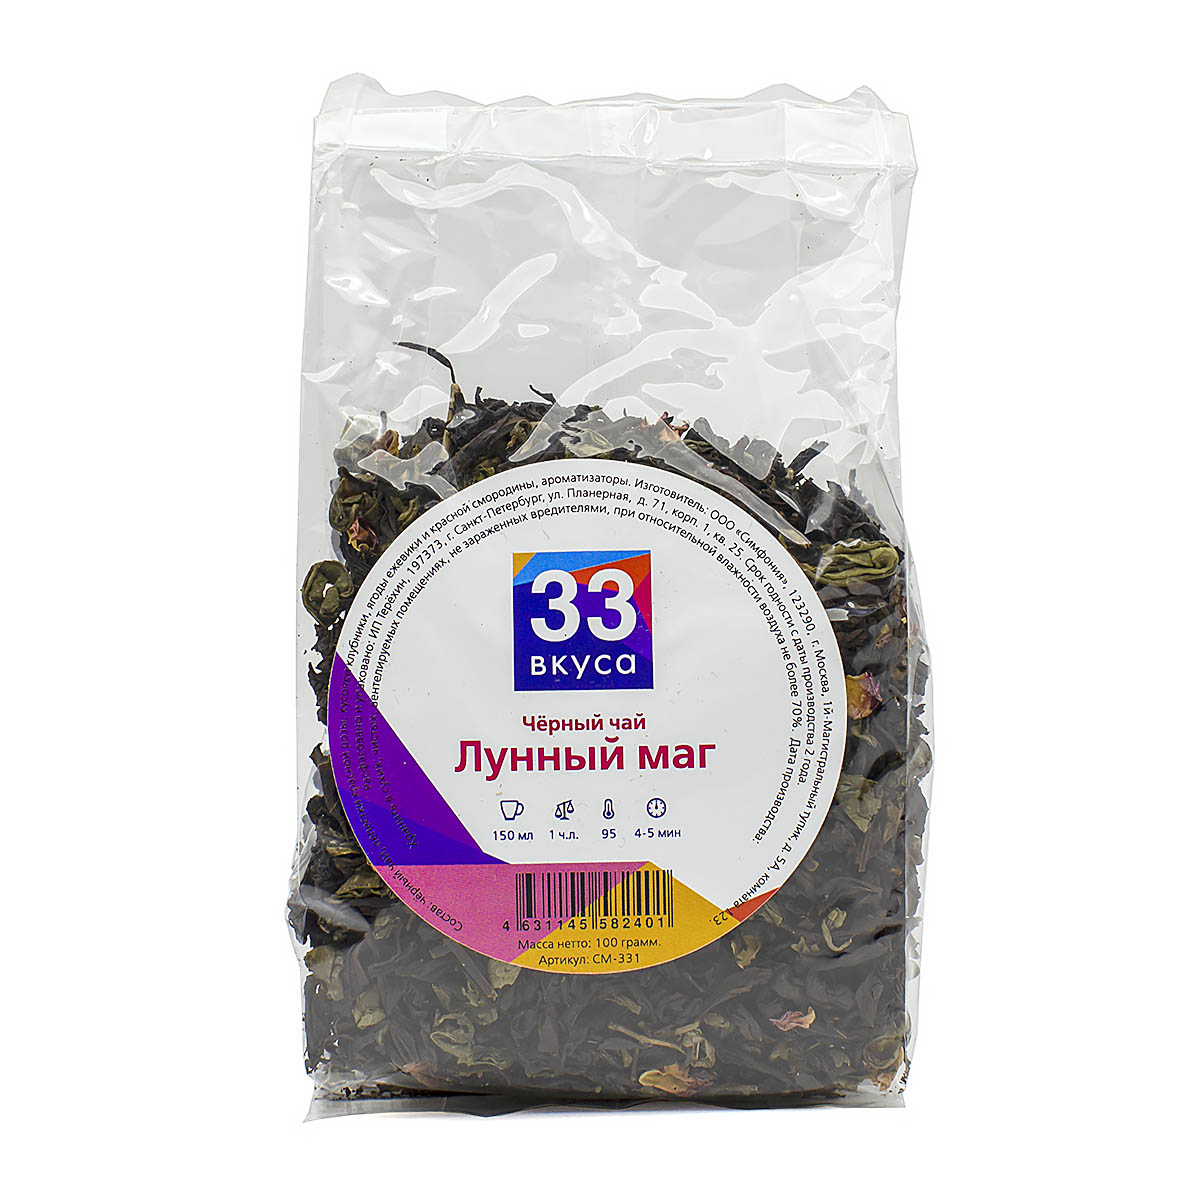 

Черный ароматизированный чай "Лунный маг", 100 г